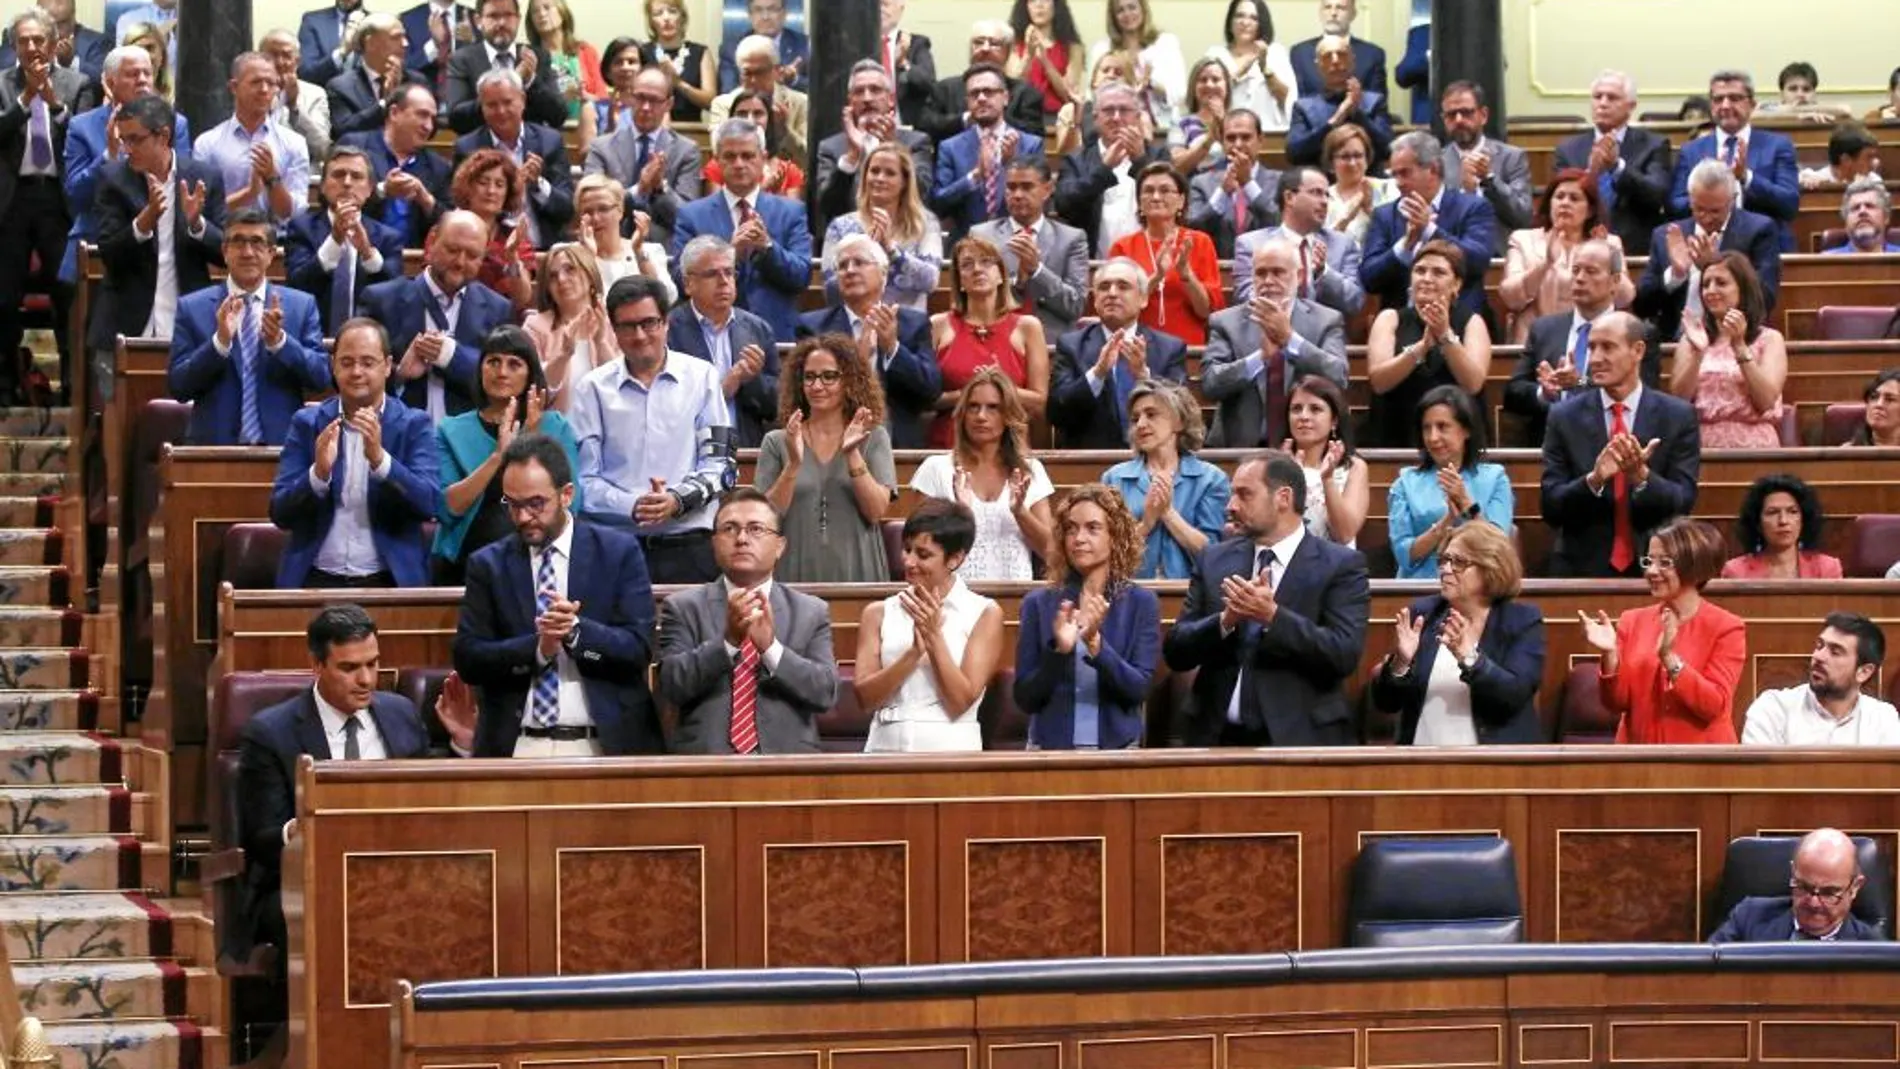 La bancada socialista aplaude en pie a su líder, Pedro Sánchez, después de que pronunciara un duro discurso contra Rajoy que cierra la puerta a un posible entendimiento futuro